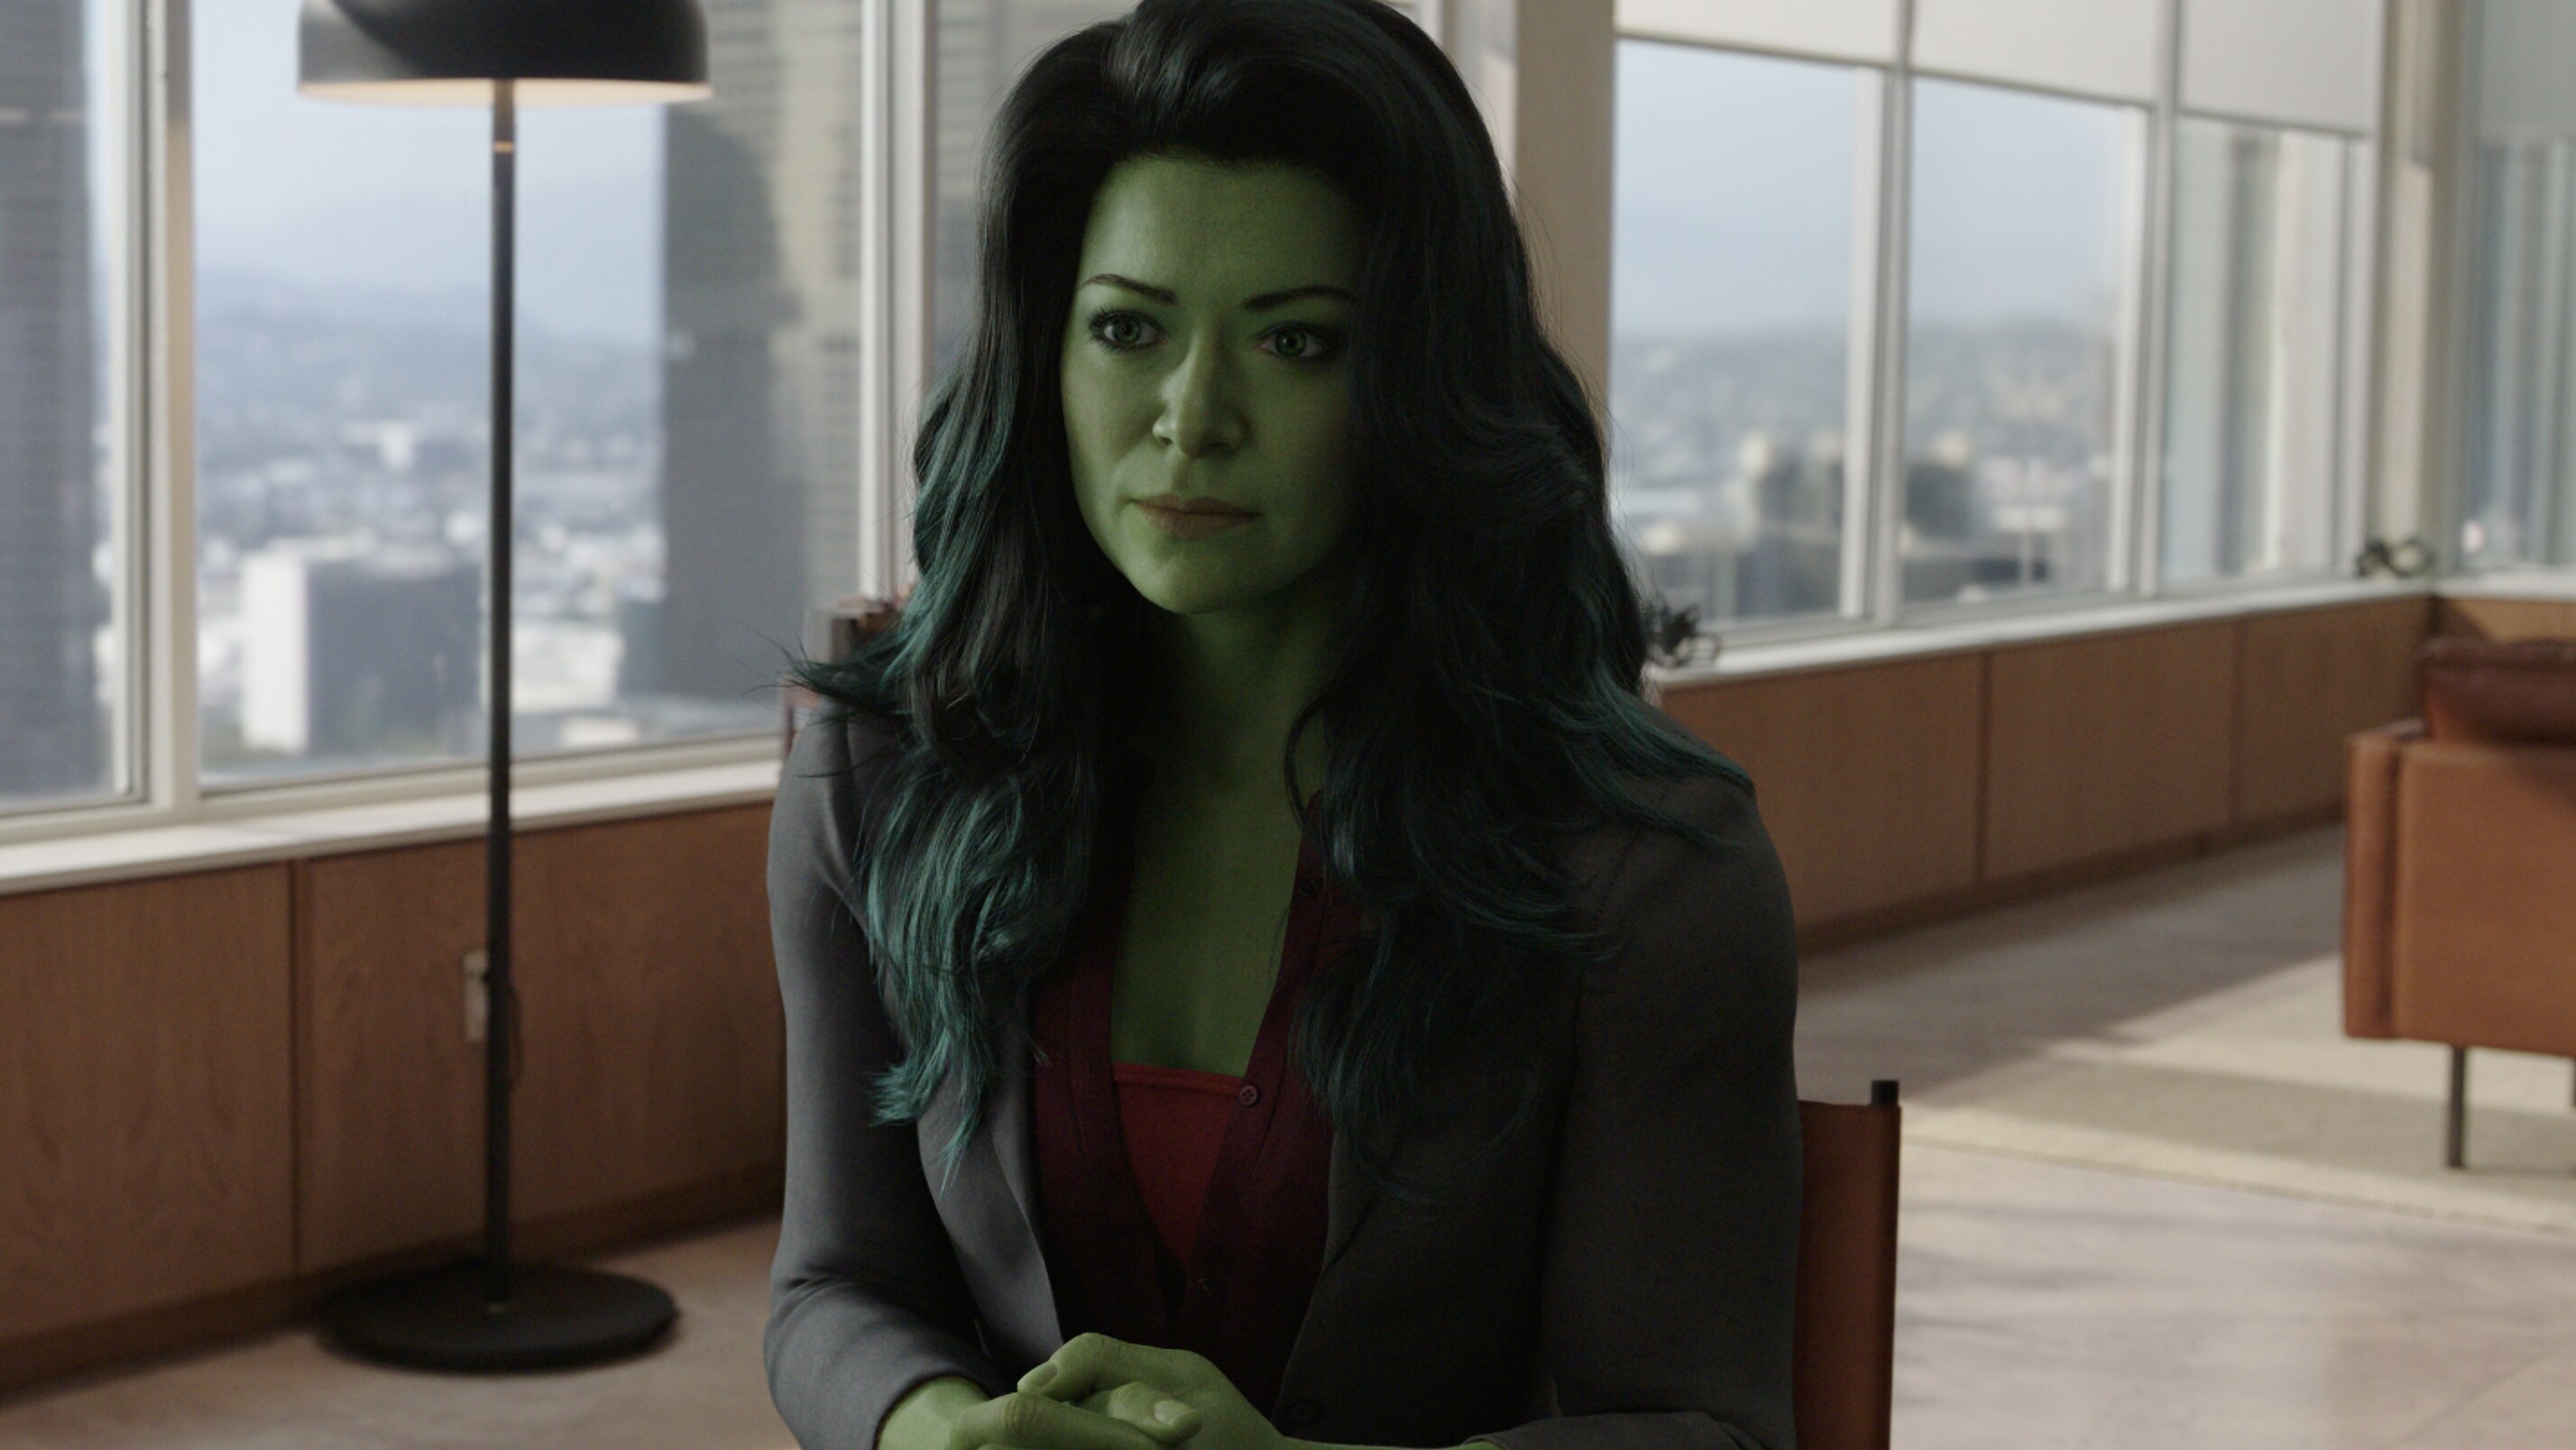 Mulher-Hulk: Tudo que você precisa saber sobre a Defensora de Heróis